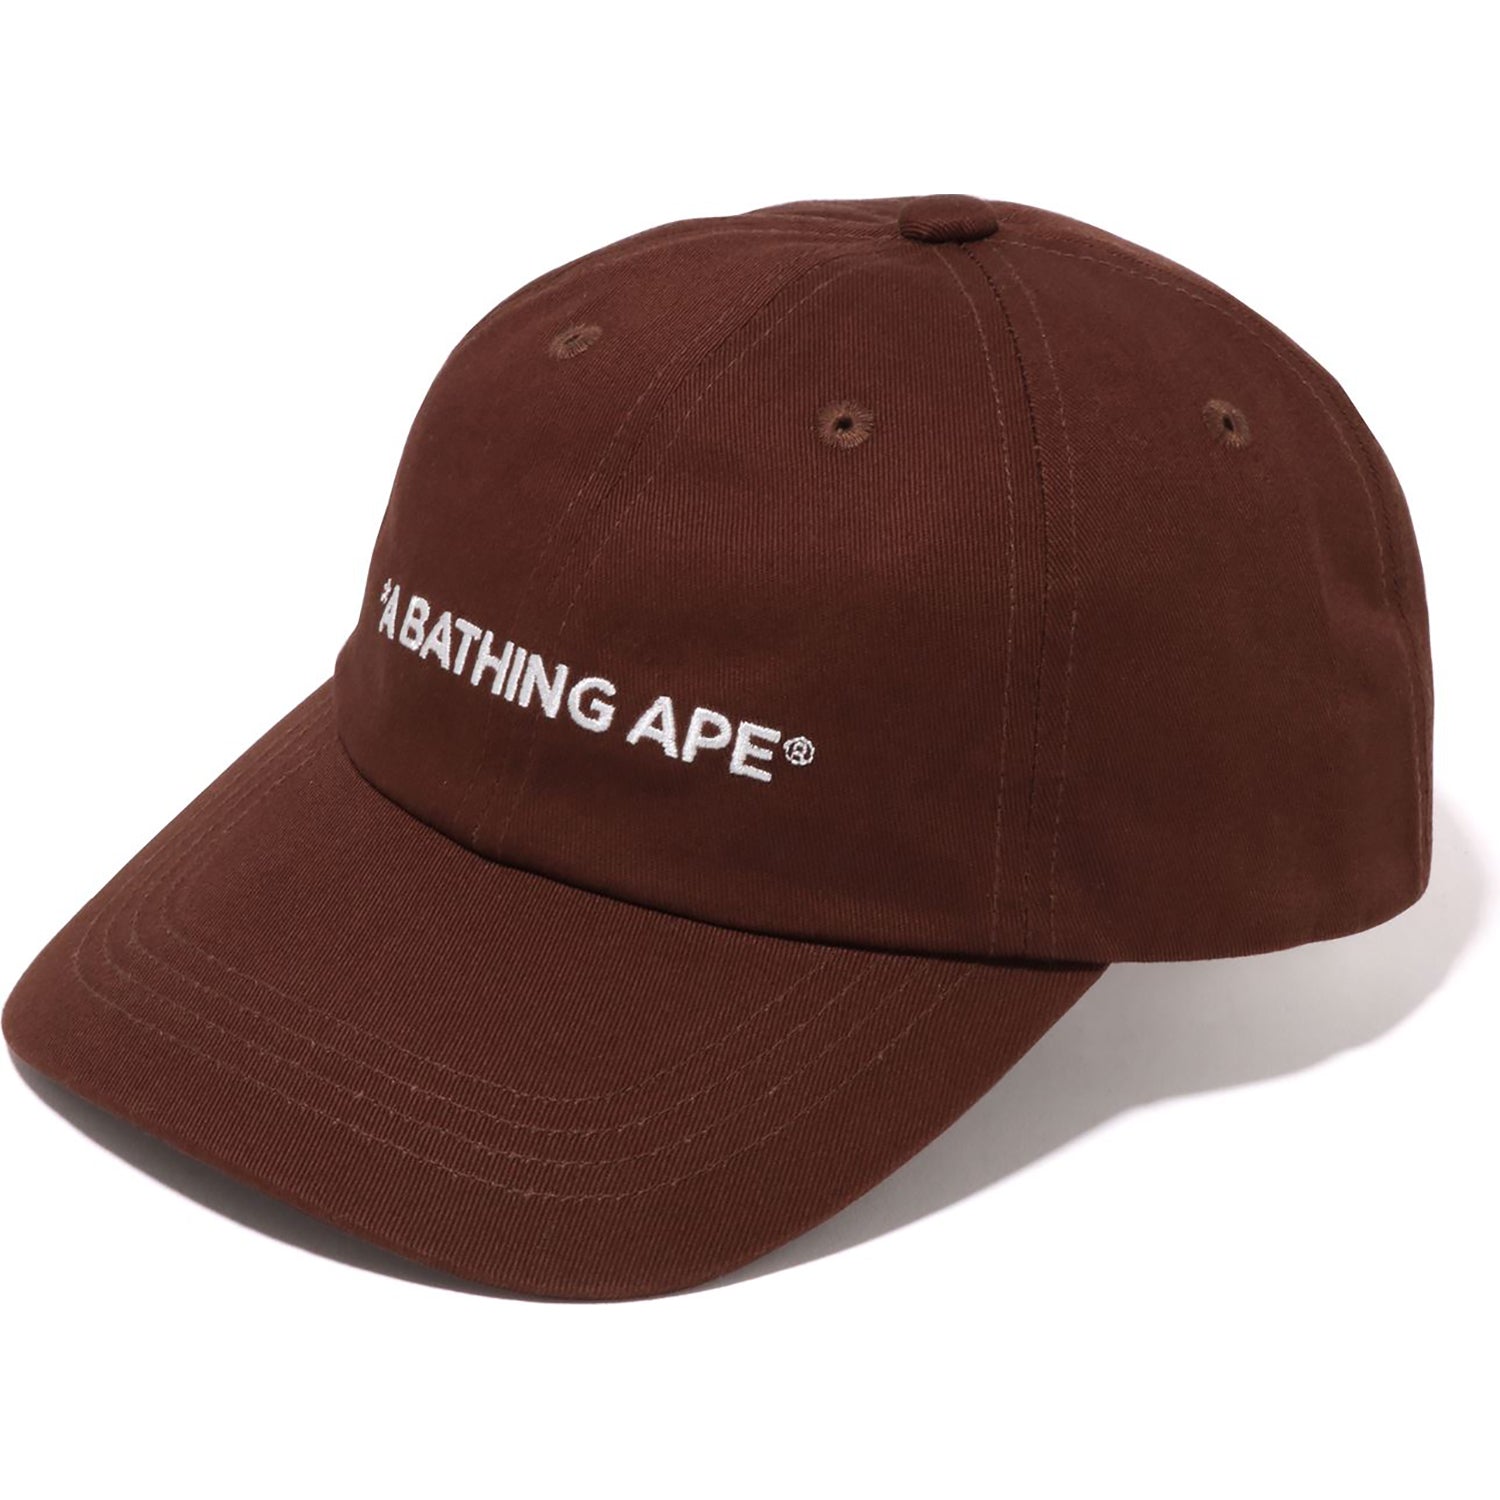 A BATHING APE 6PANEL CAP MENS – us.bape.com